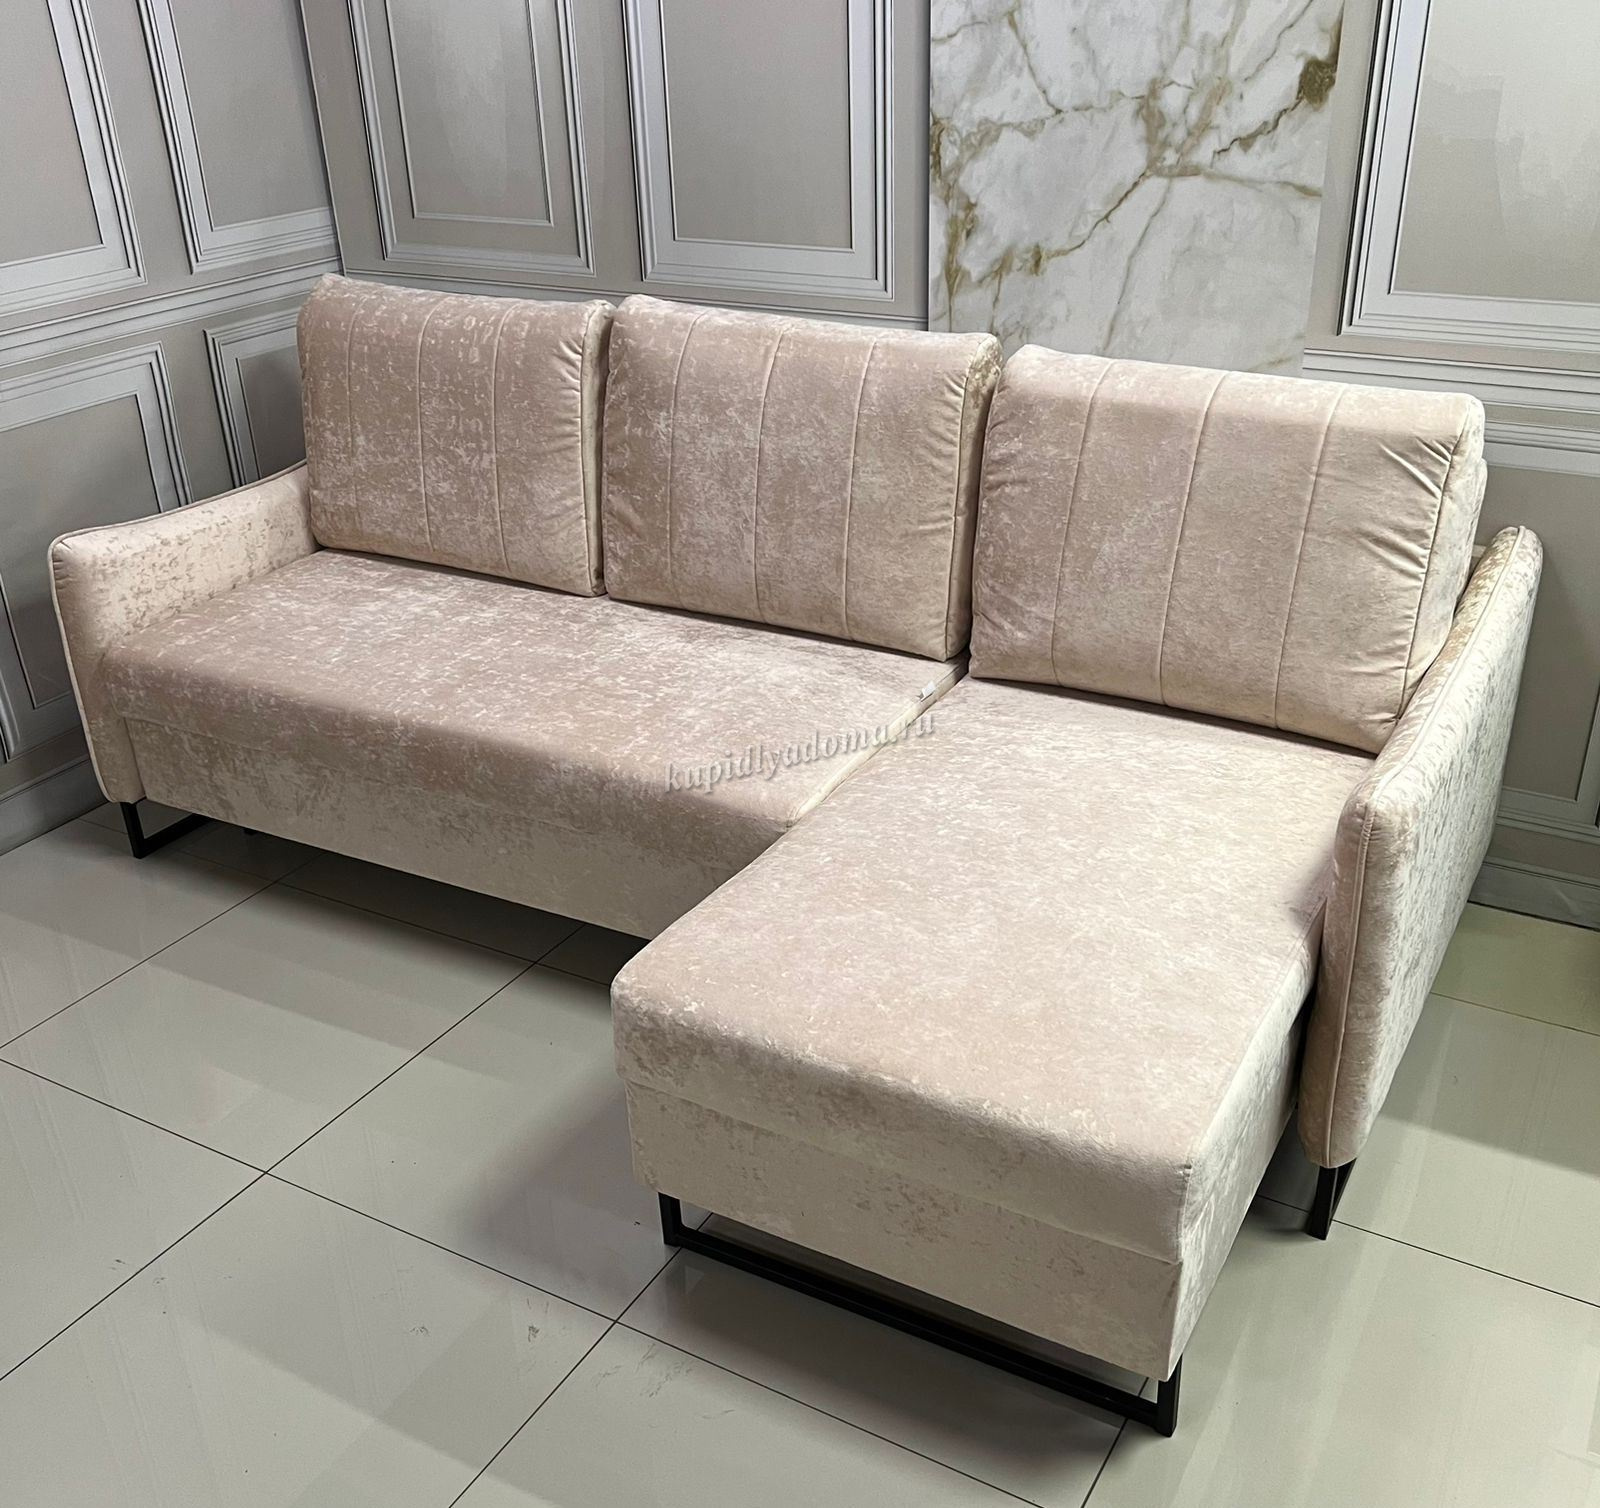 Диван-кровать Лотос-2 ДУ (4 кат.) купить в Хабаровске по низкой цене винтернет магазине мебели